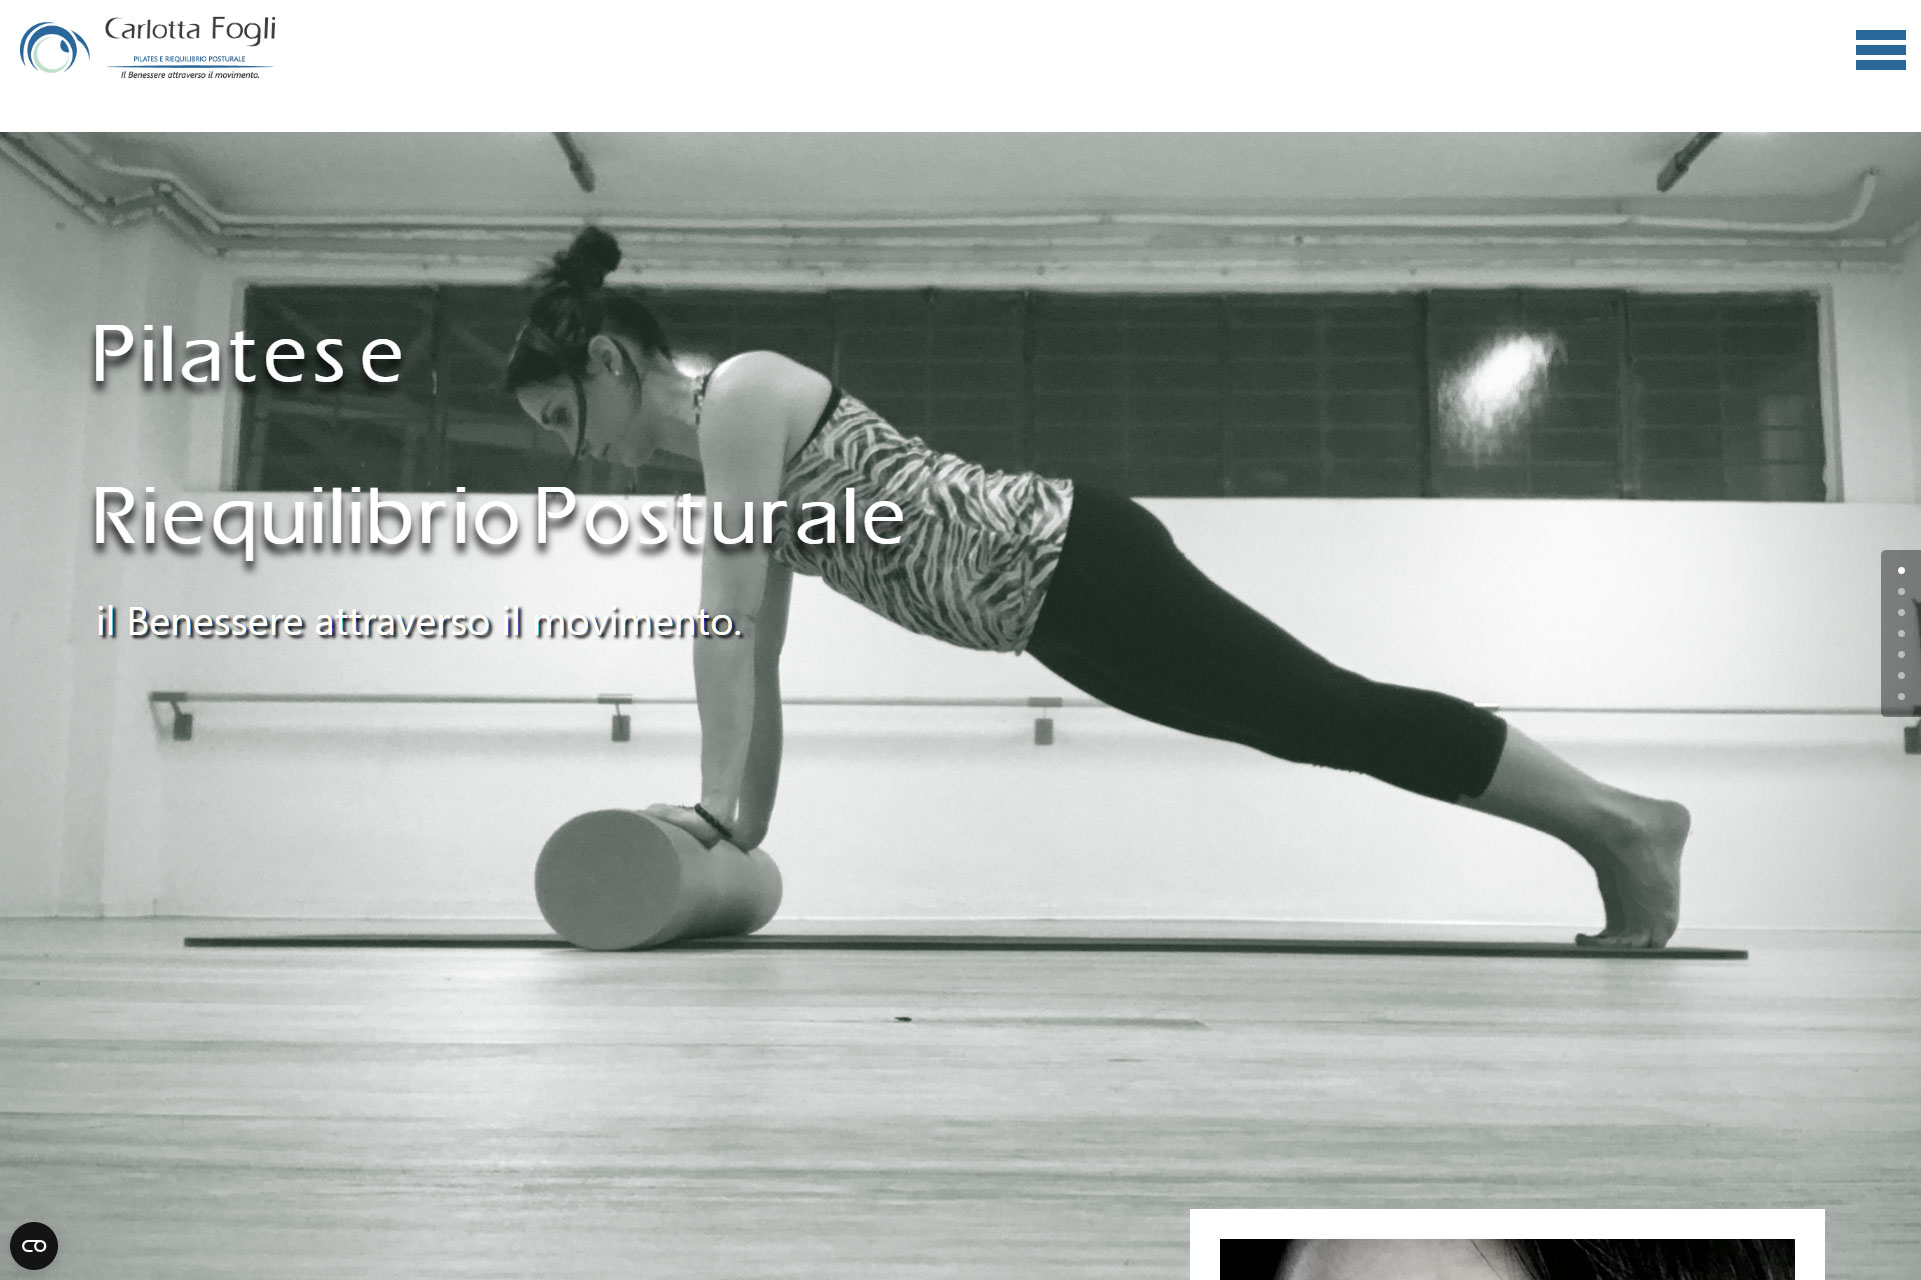 lv-design-realizzazione-siti-web-bologna-portfolio-carlotta-fogli-pilates-e-riequilibrio-posturale-slide-1